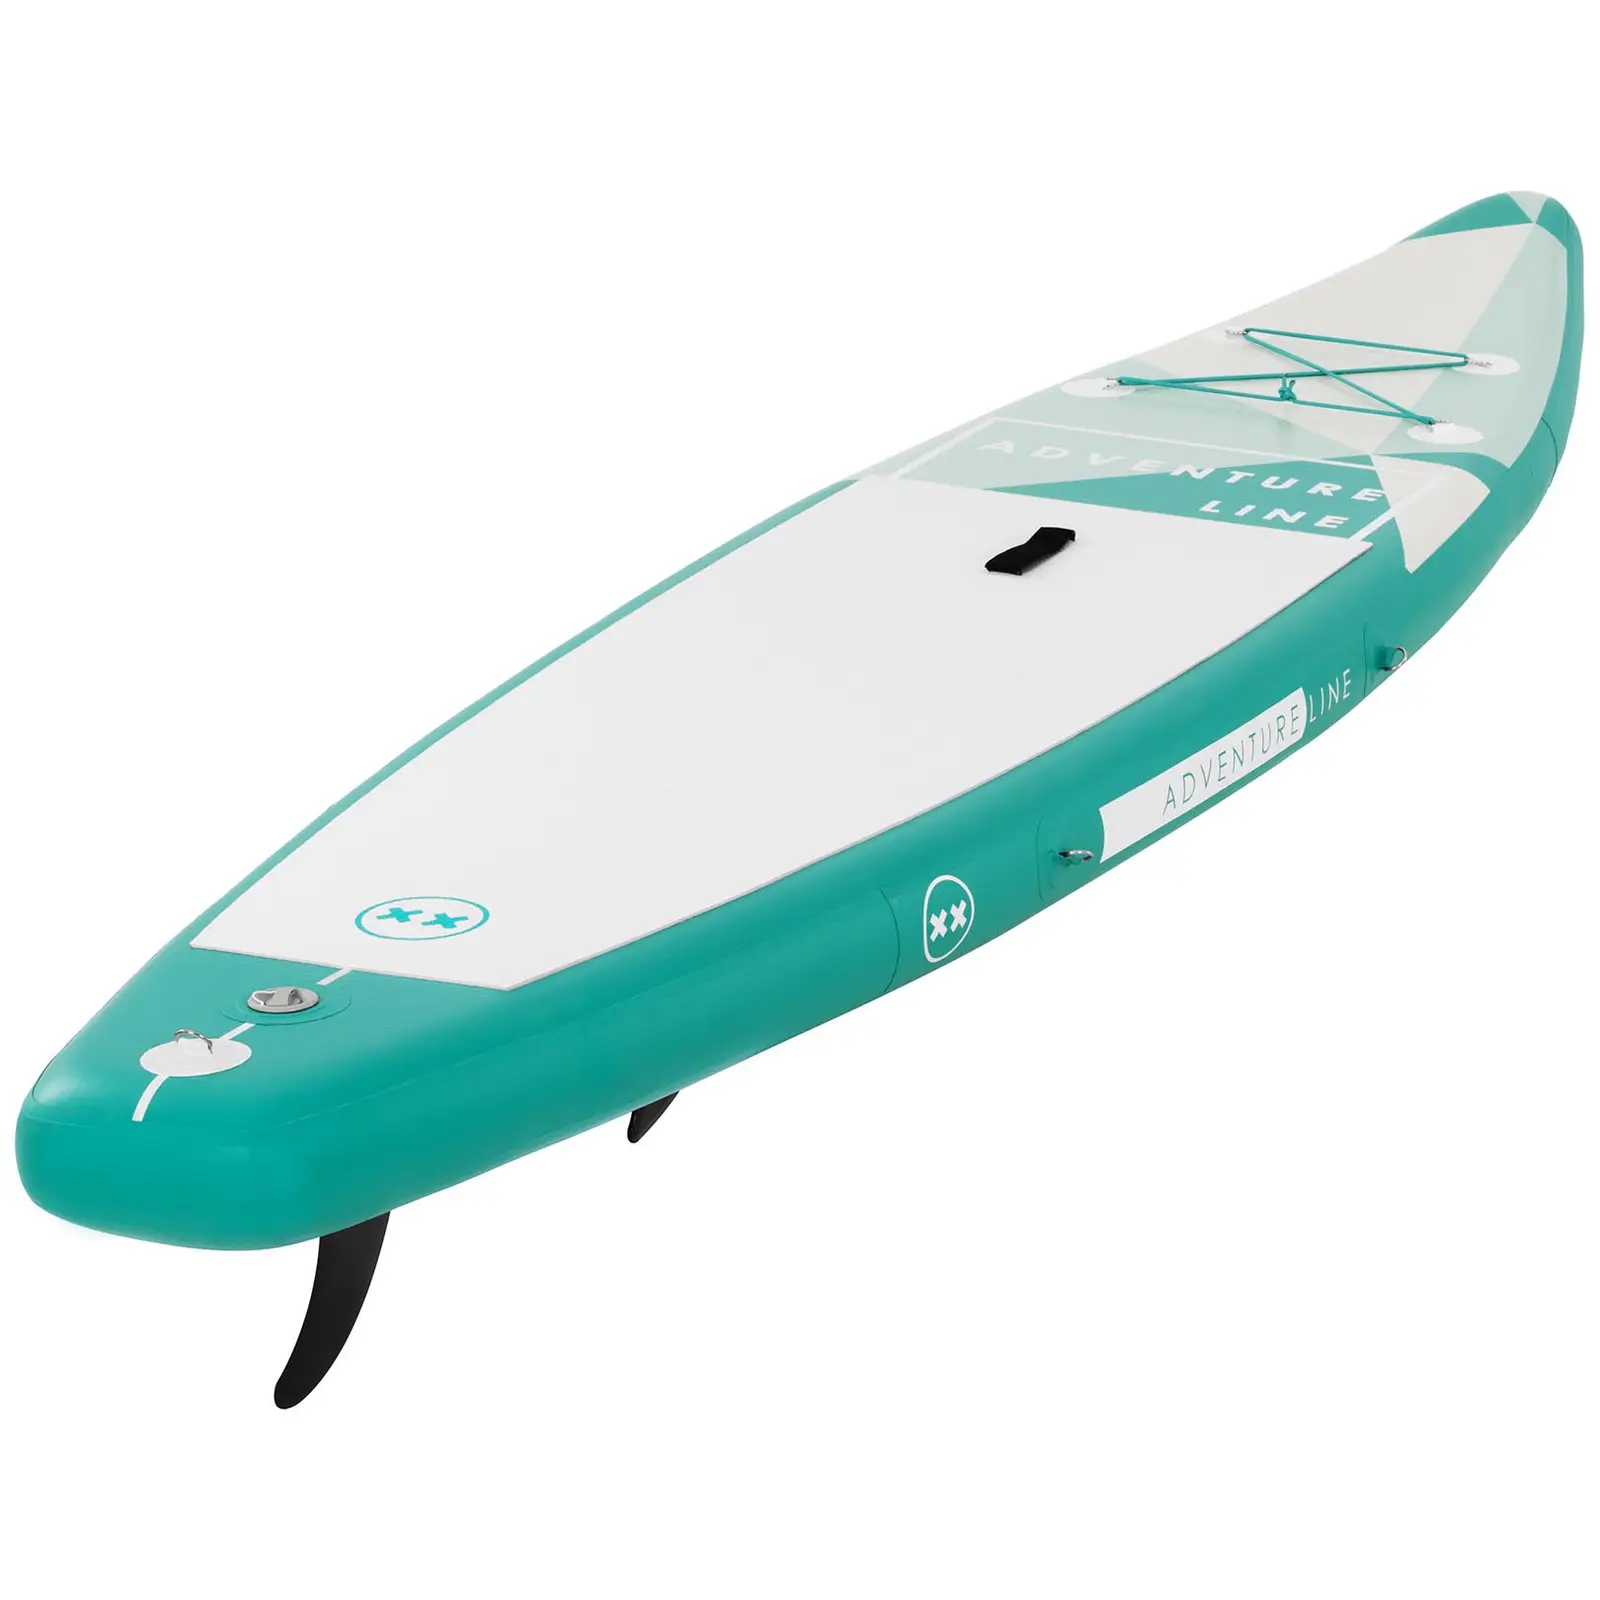 Paddle-board - 120 kg - grønt - sæt inkl. paddel og tilbehør